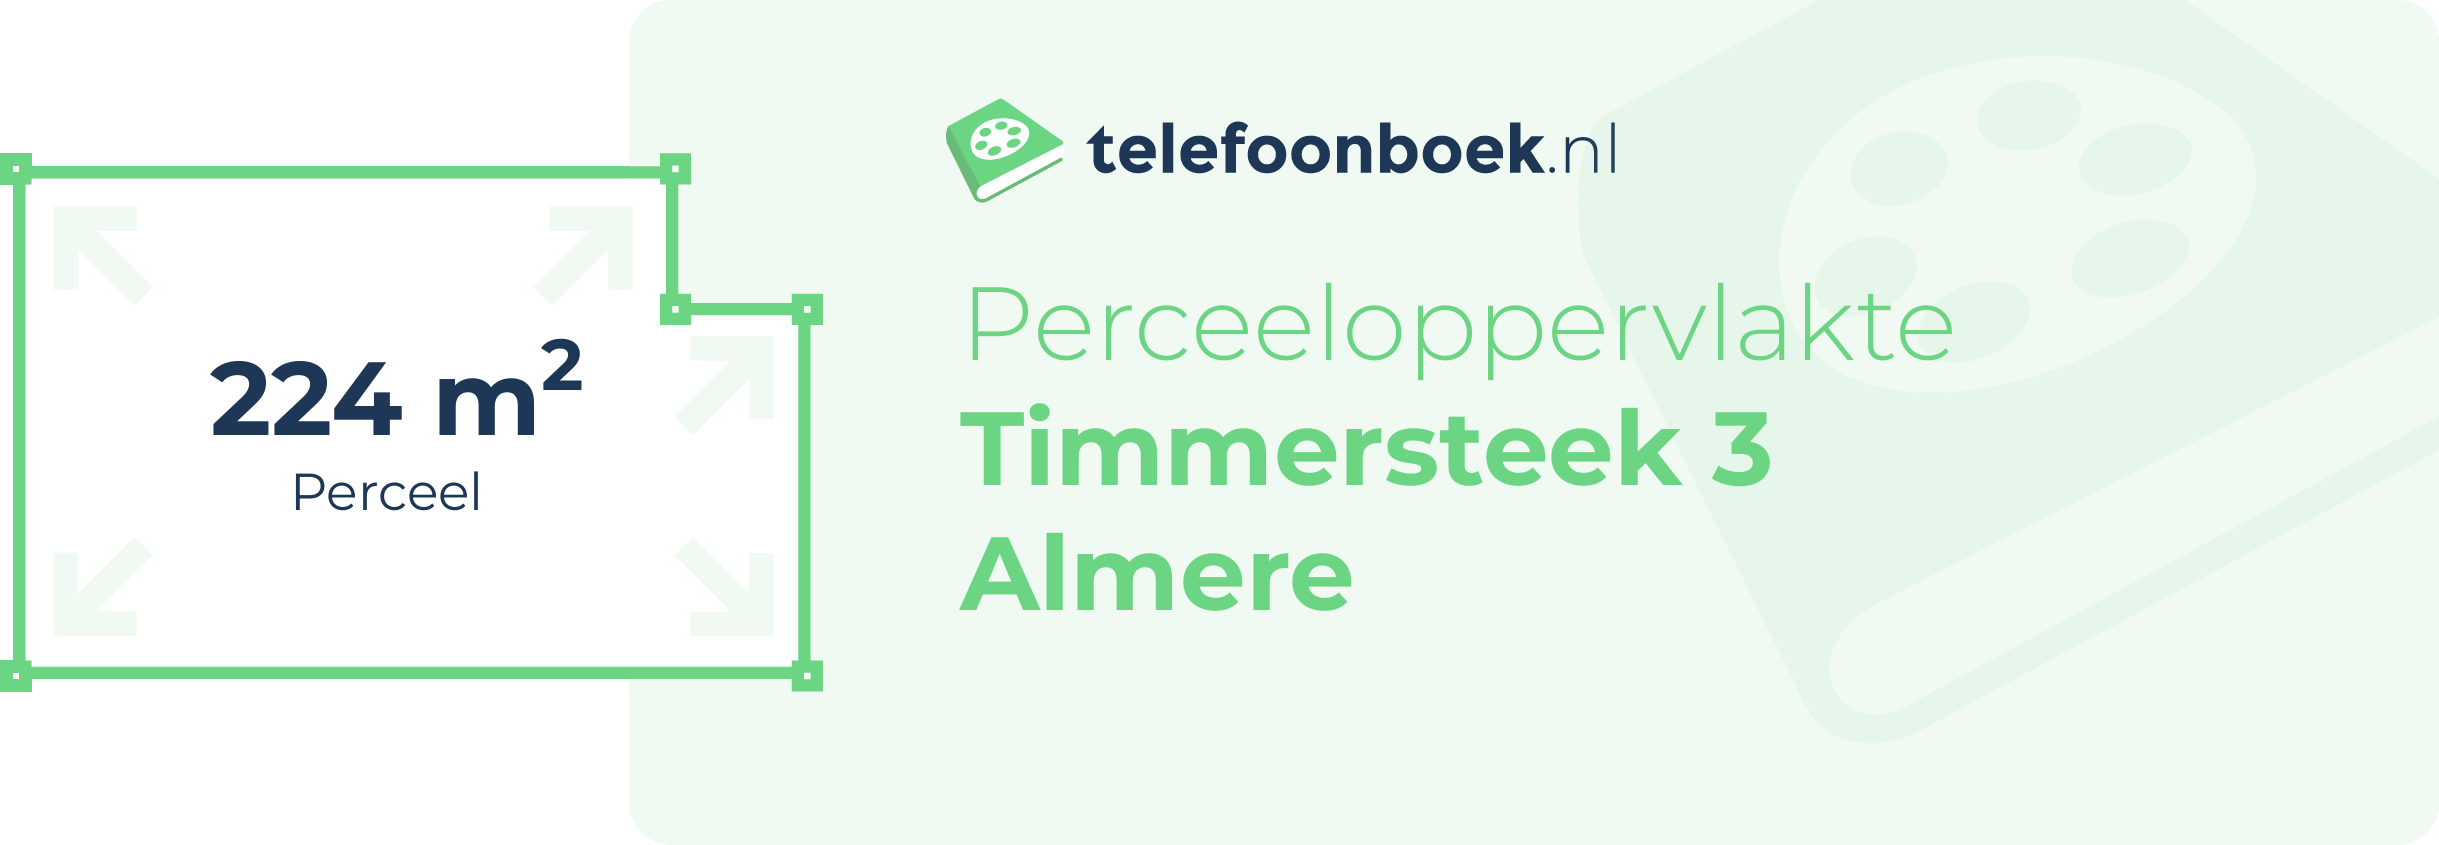 Perceeloppervlakte Timmersteek 3 Almere